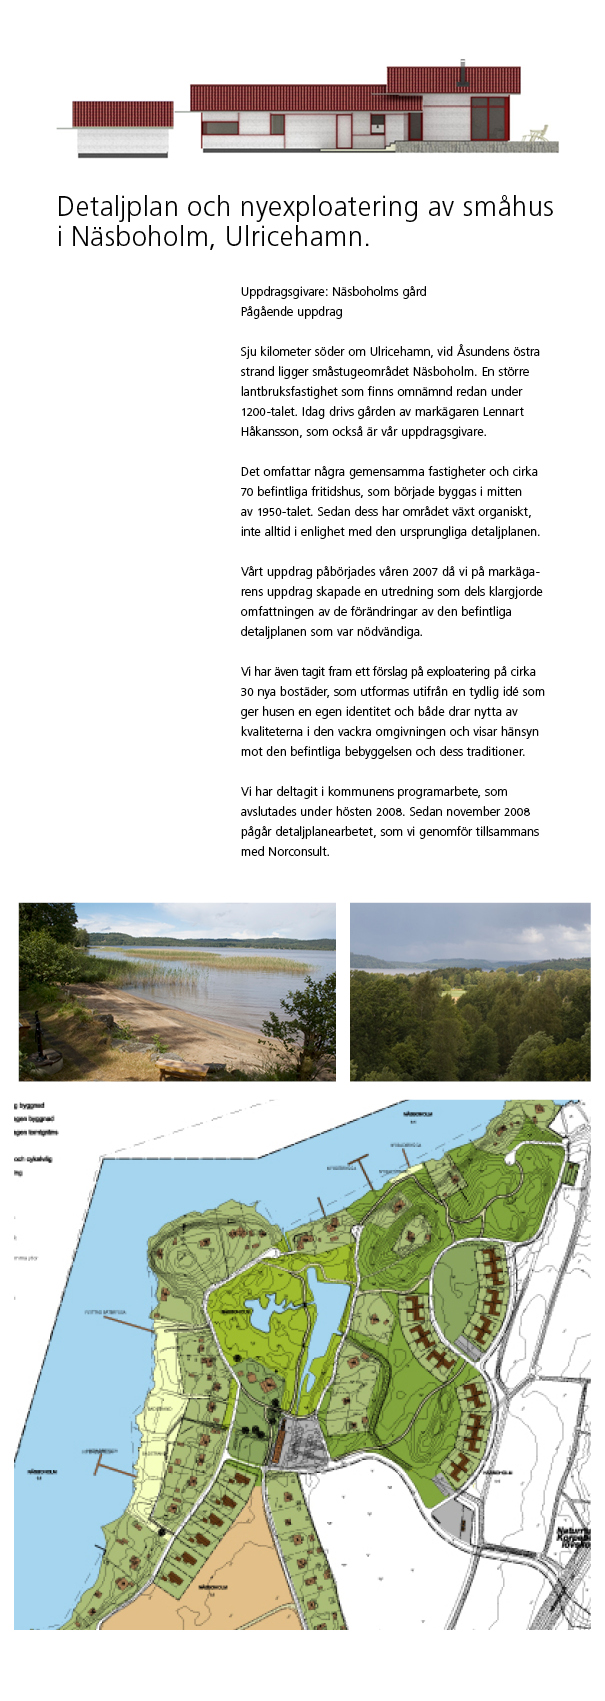 Sju kilometer söder om Ulricehamn, vis Åsundens östra strand ligger småstugeområdet Näsboholm. Helhetshus har tagit fram förslag på exploatering på markägarens uppdrag.